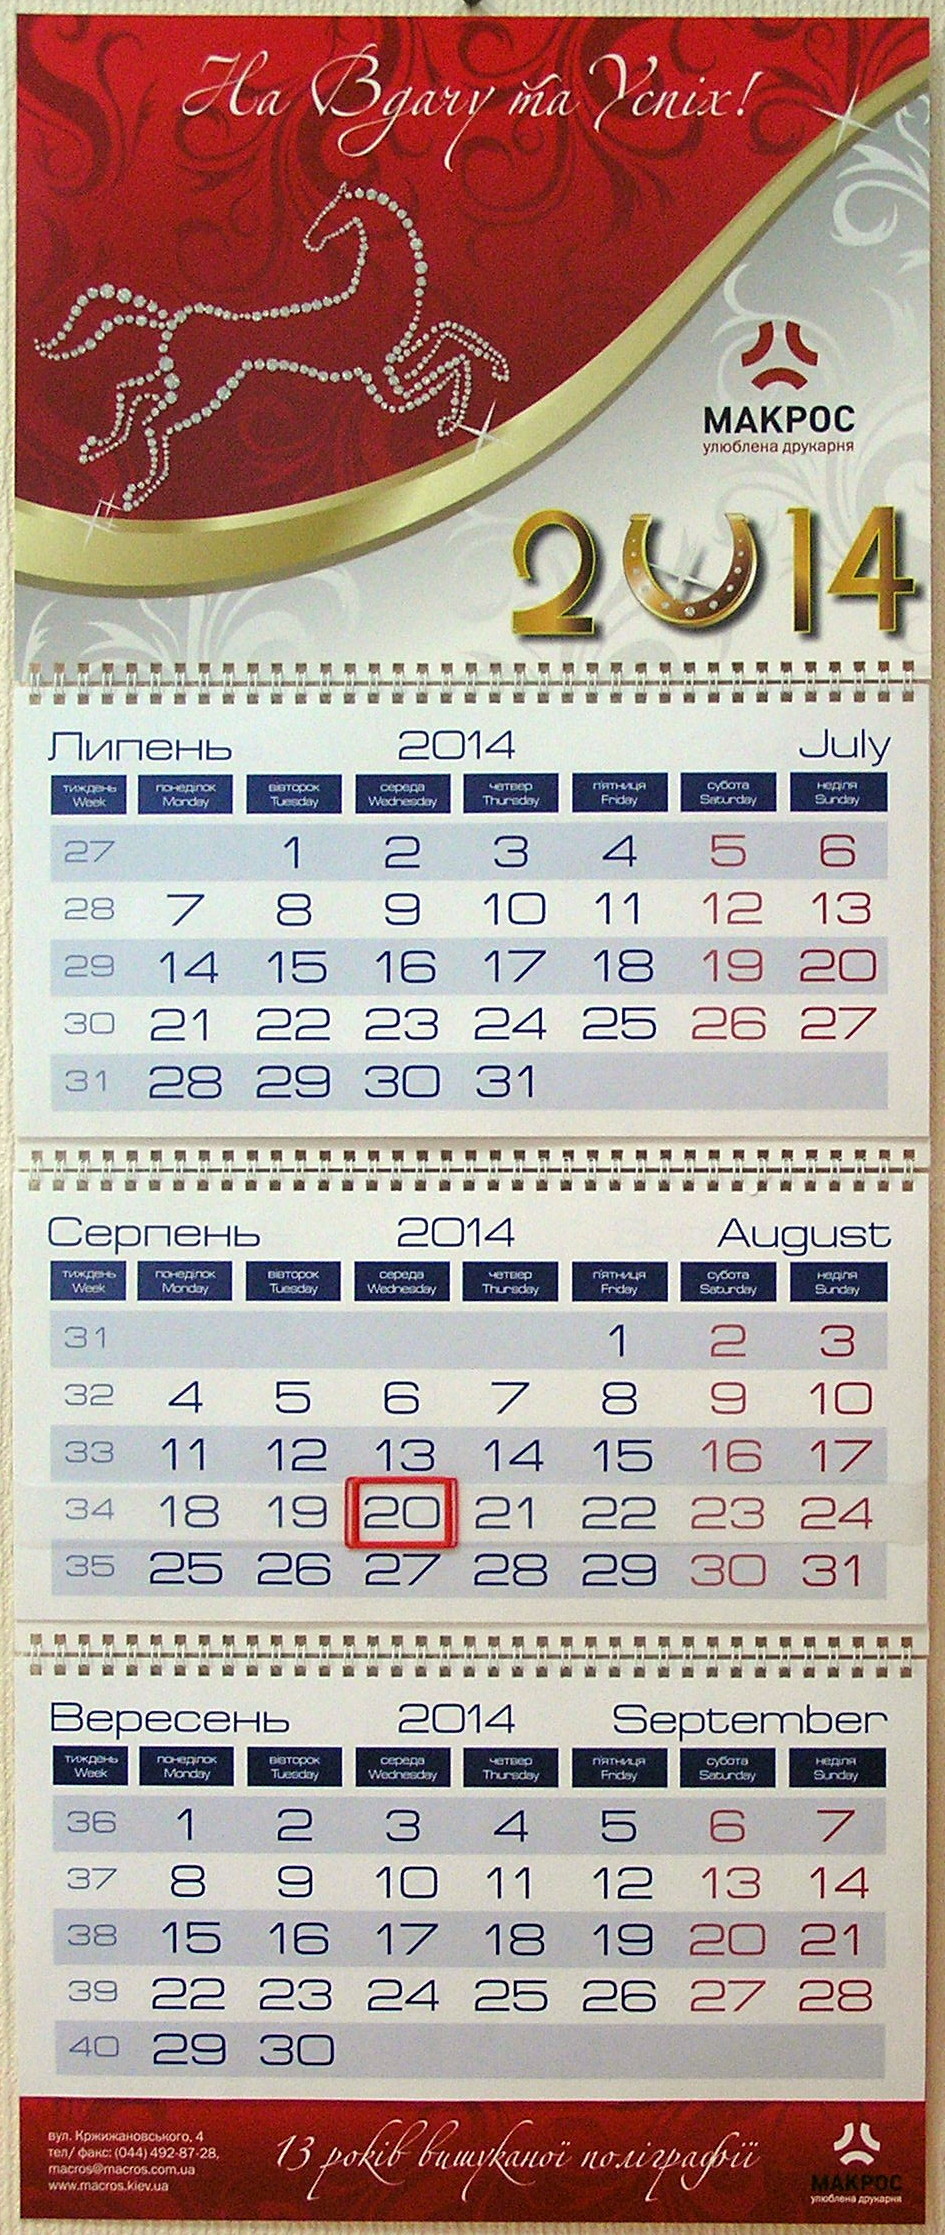 Друк квартальних календарів «Макрос». Поліграфія друкарні Макрос, виготовлення квартальних календарів, спецификация 966996-1